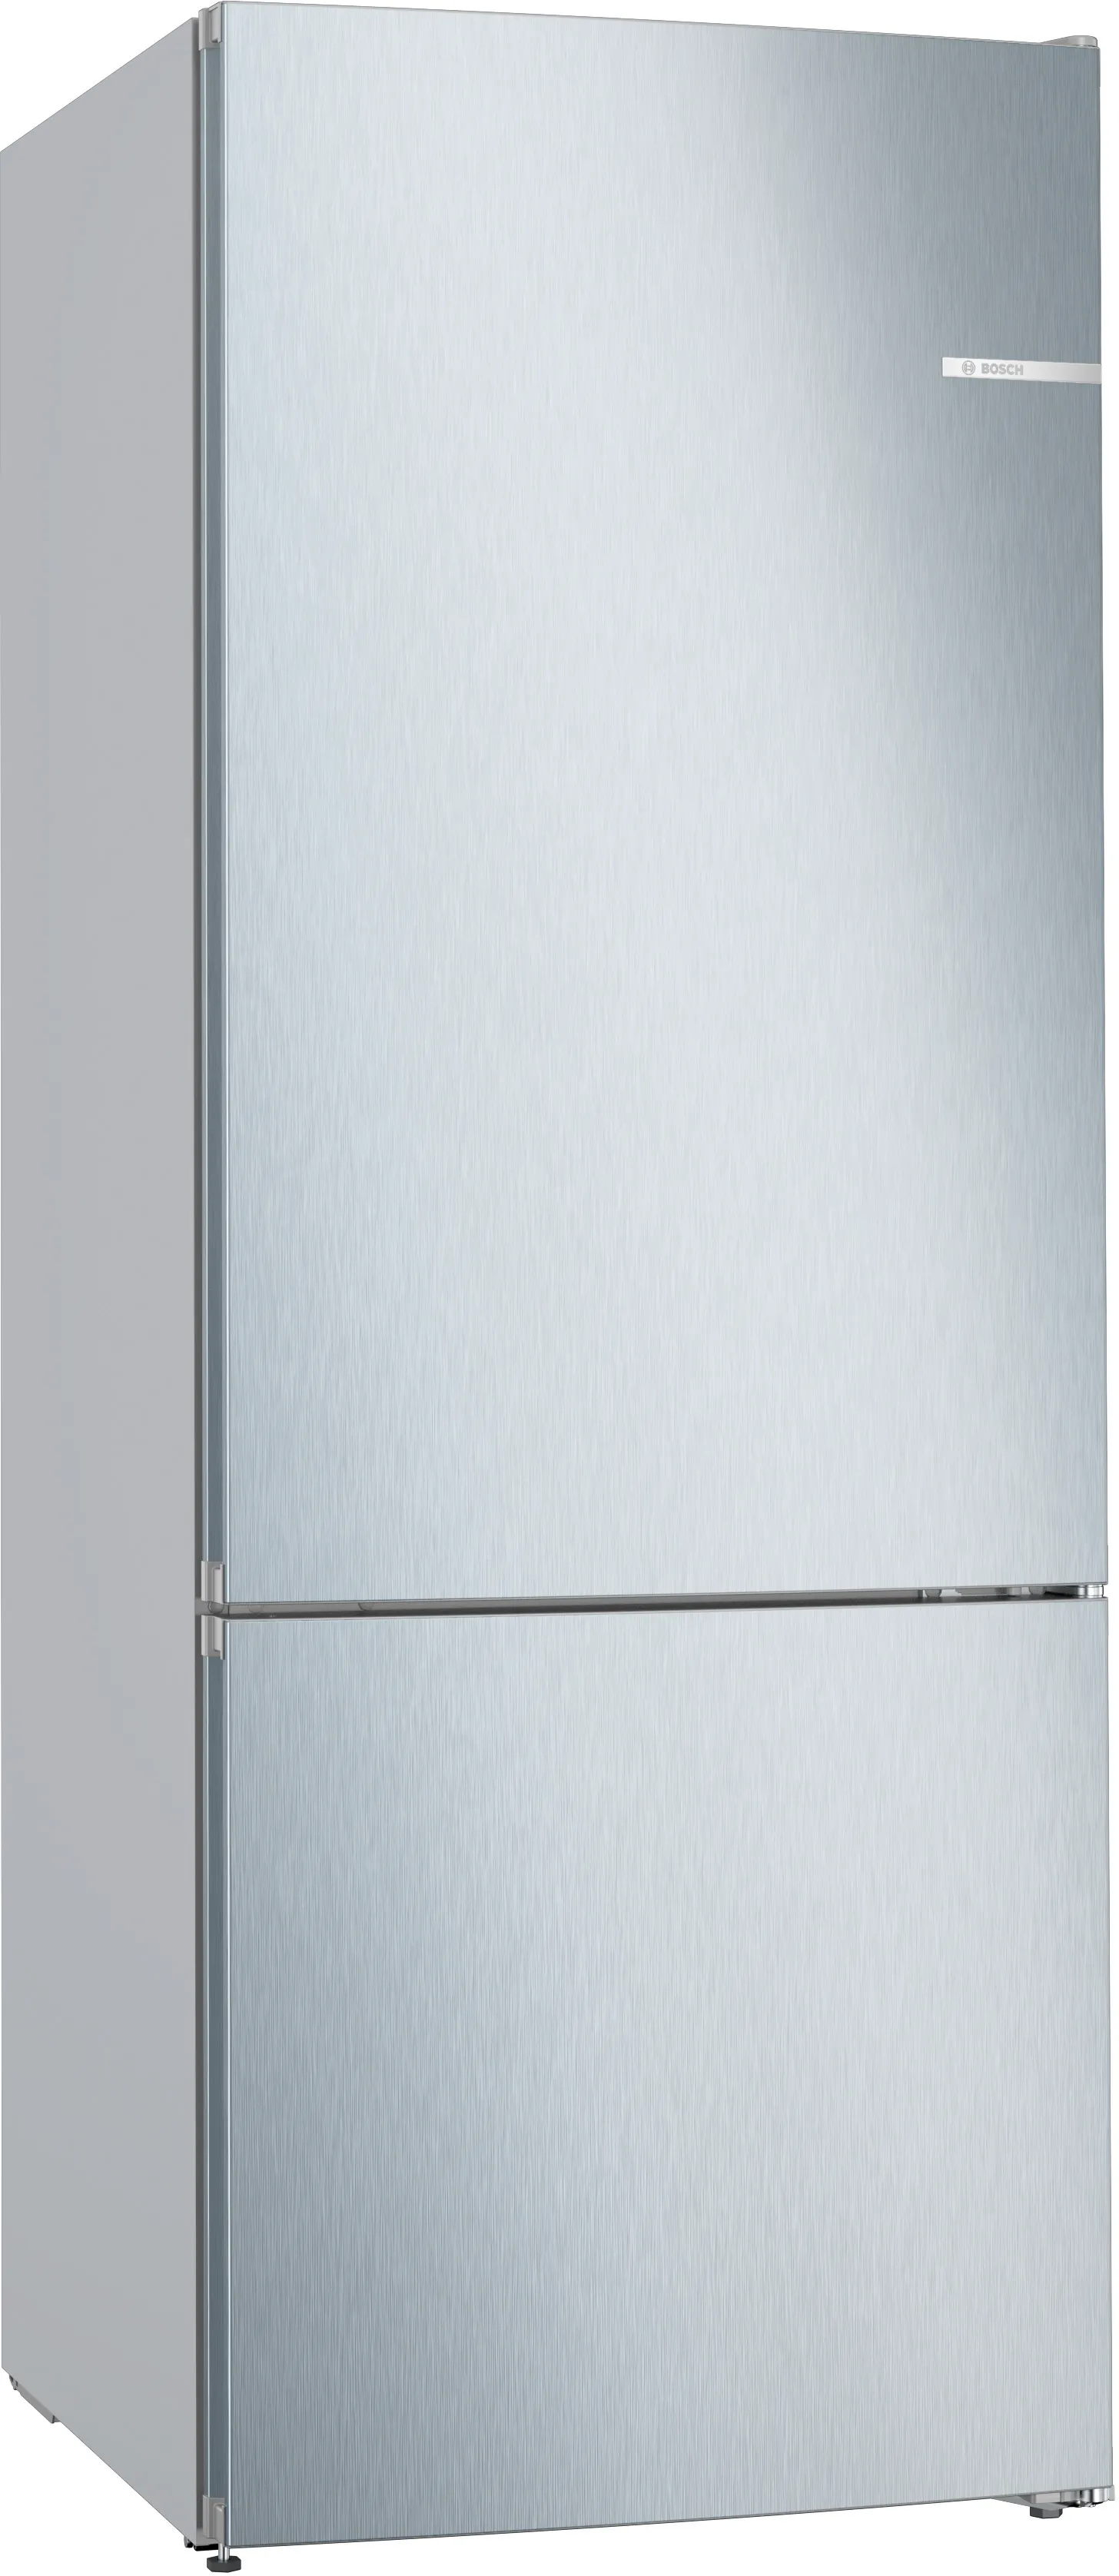 Серия 4 Отдельностоящий холодильник с нижней морозильной камерой 186 x 70 cm Под нержавеющую сталь 